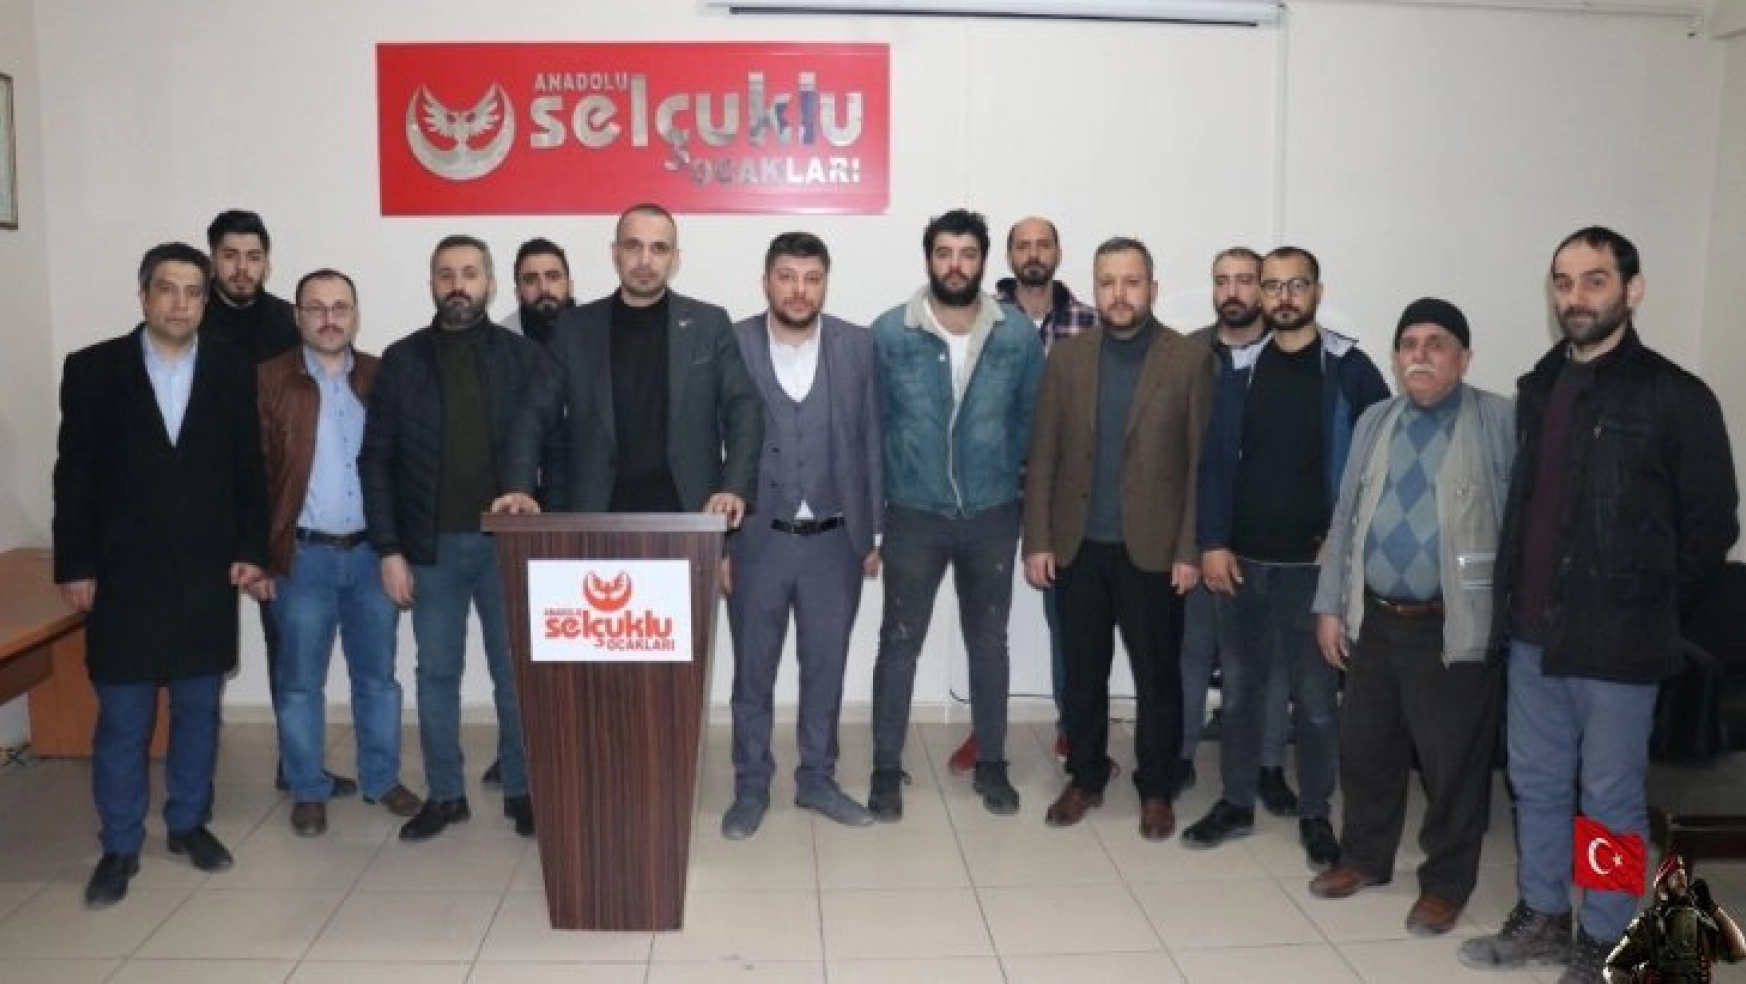 Anadolu Selçuklu Ocaklarından TSK'ya destek açıklaması